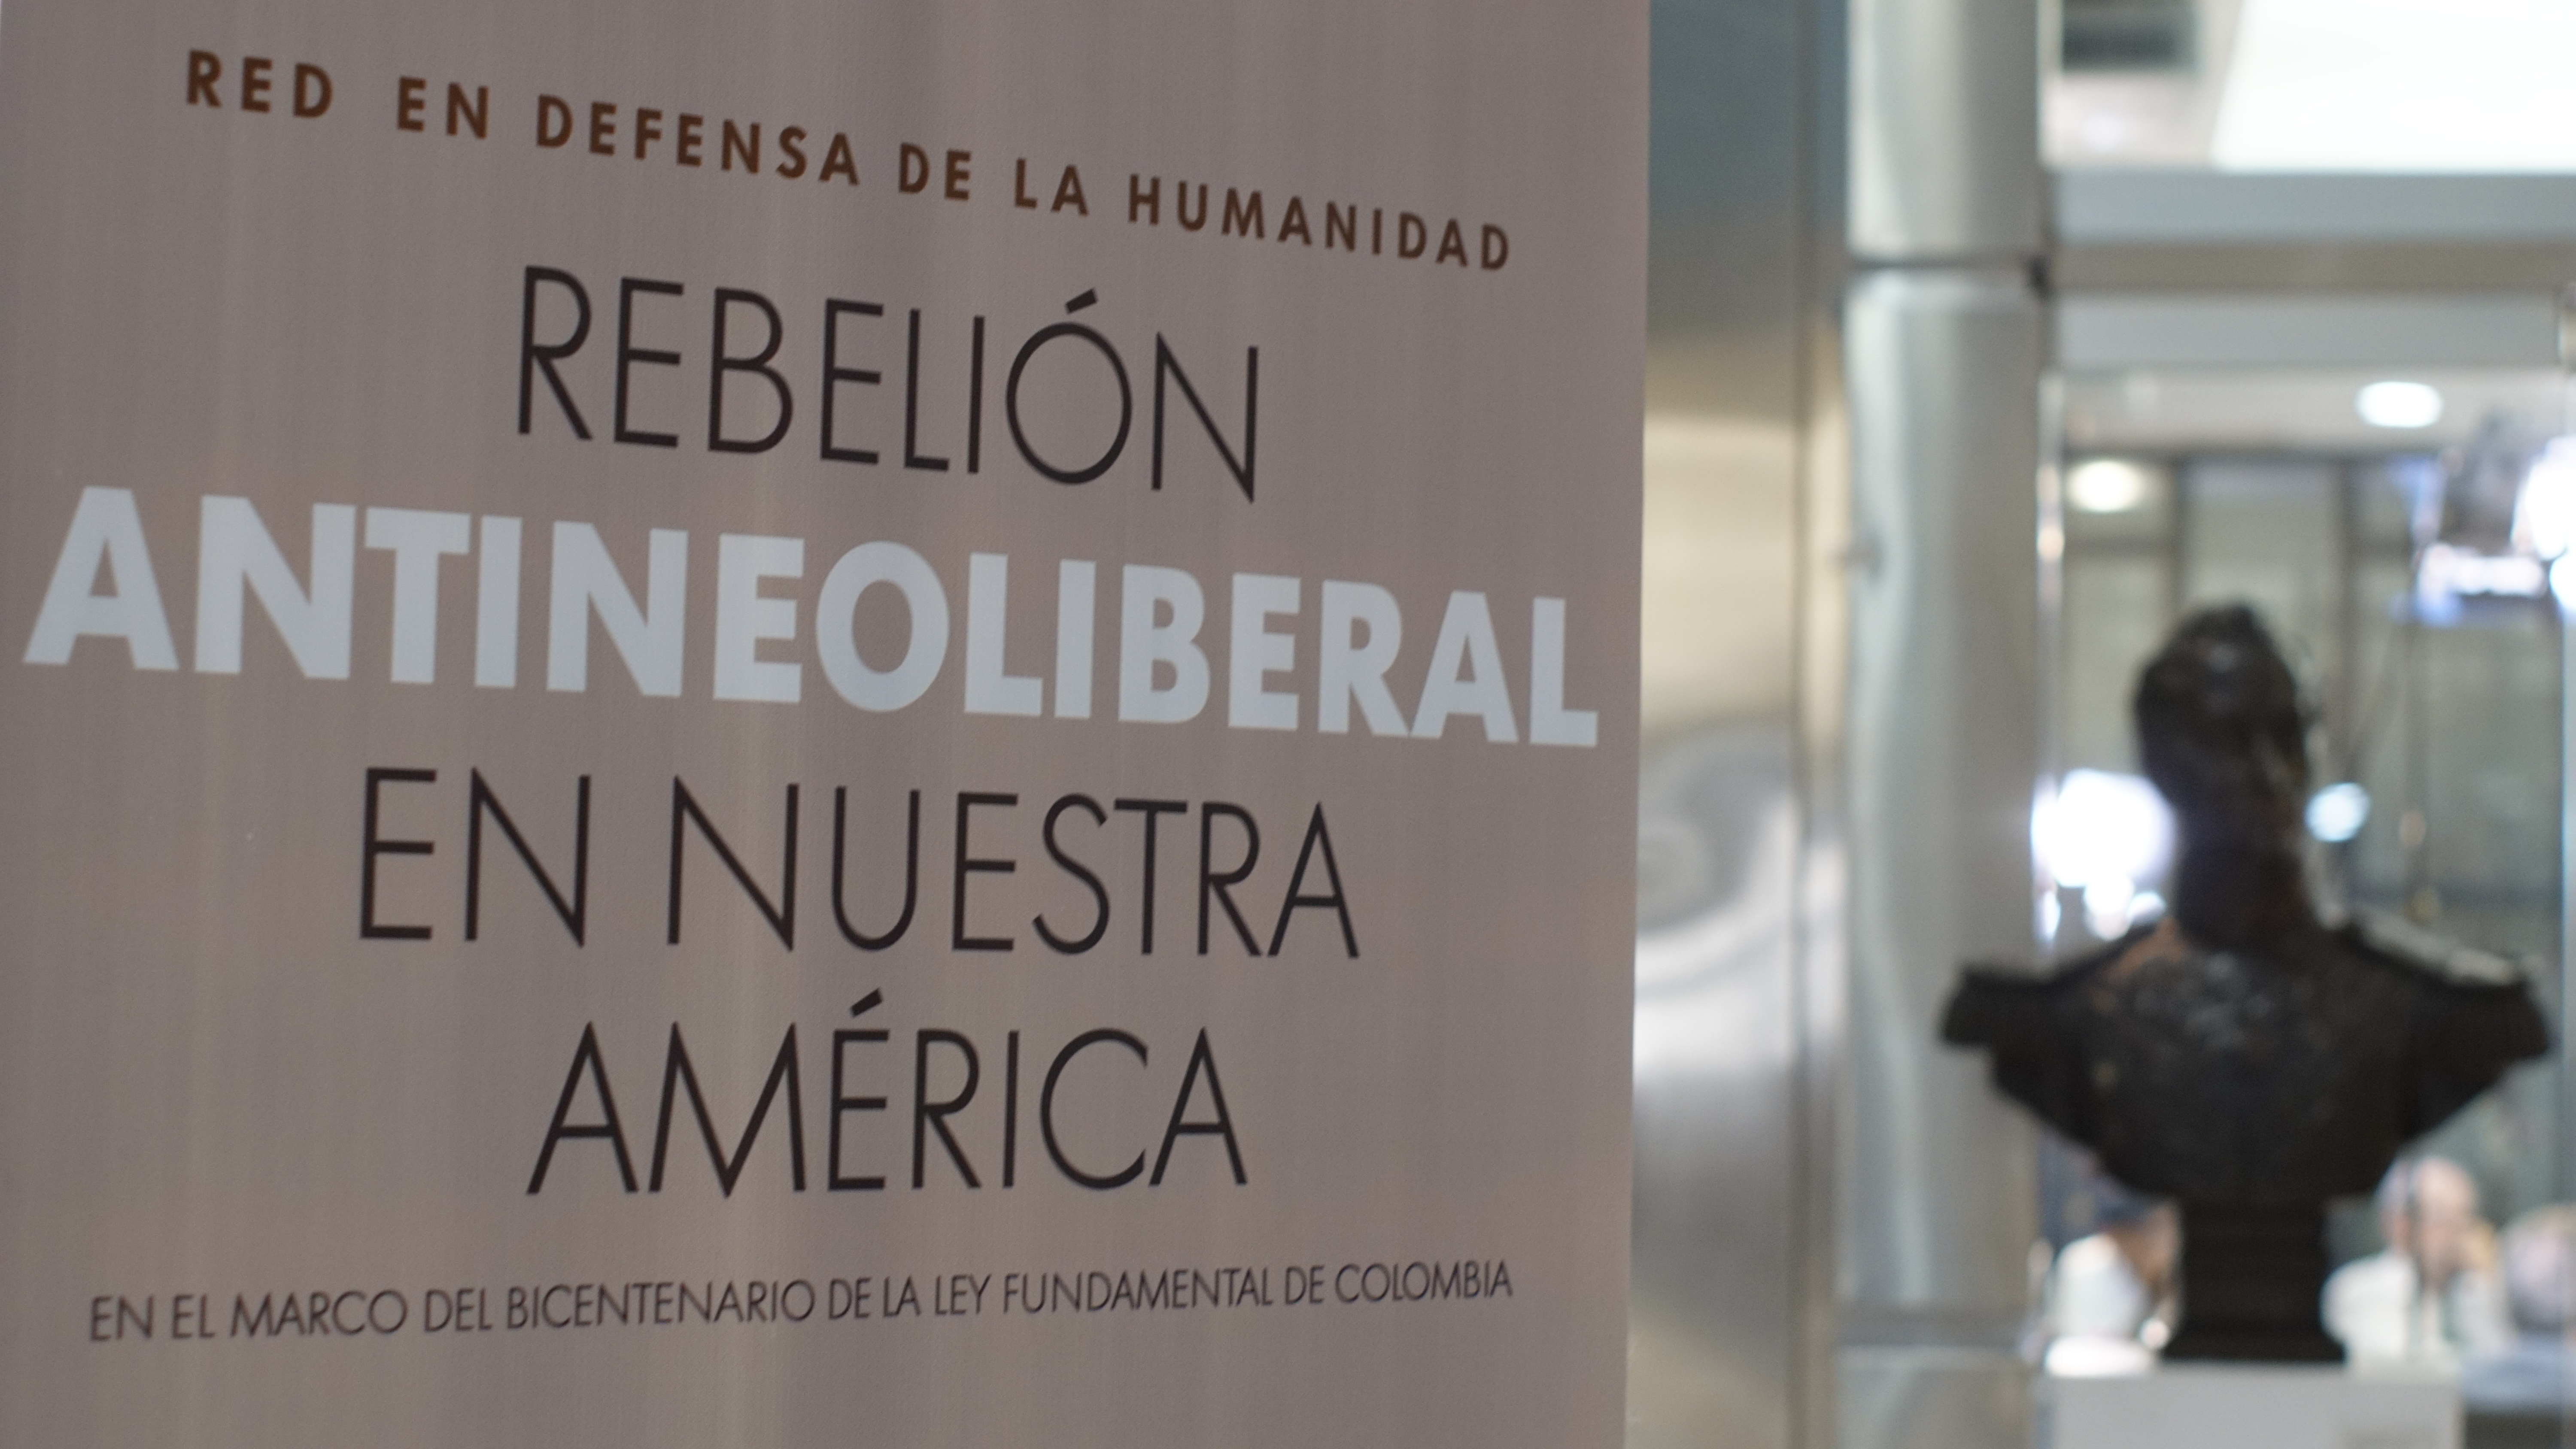 Continúa el foro internacional: Rebelión antineoliberal en nuestra América